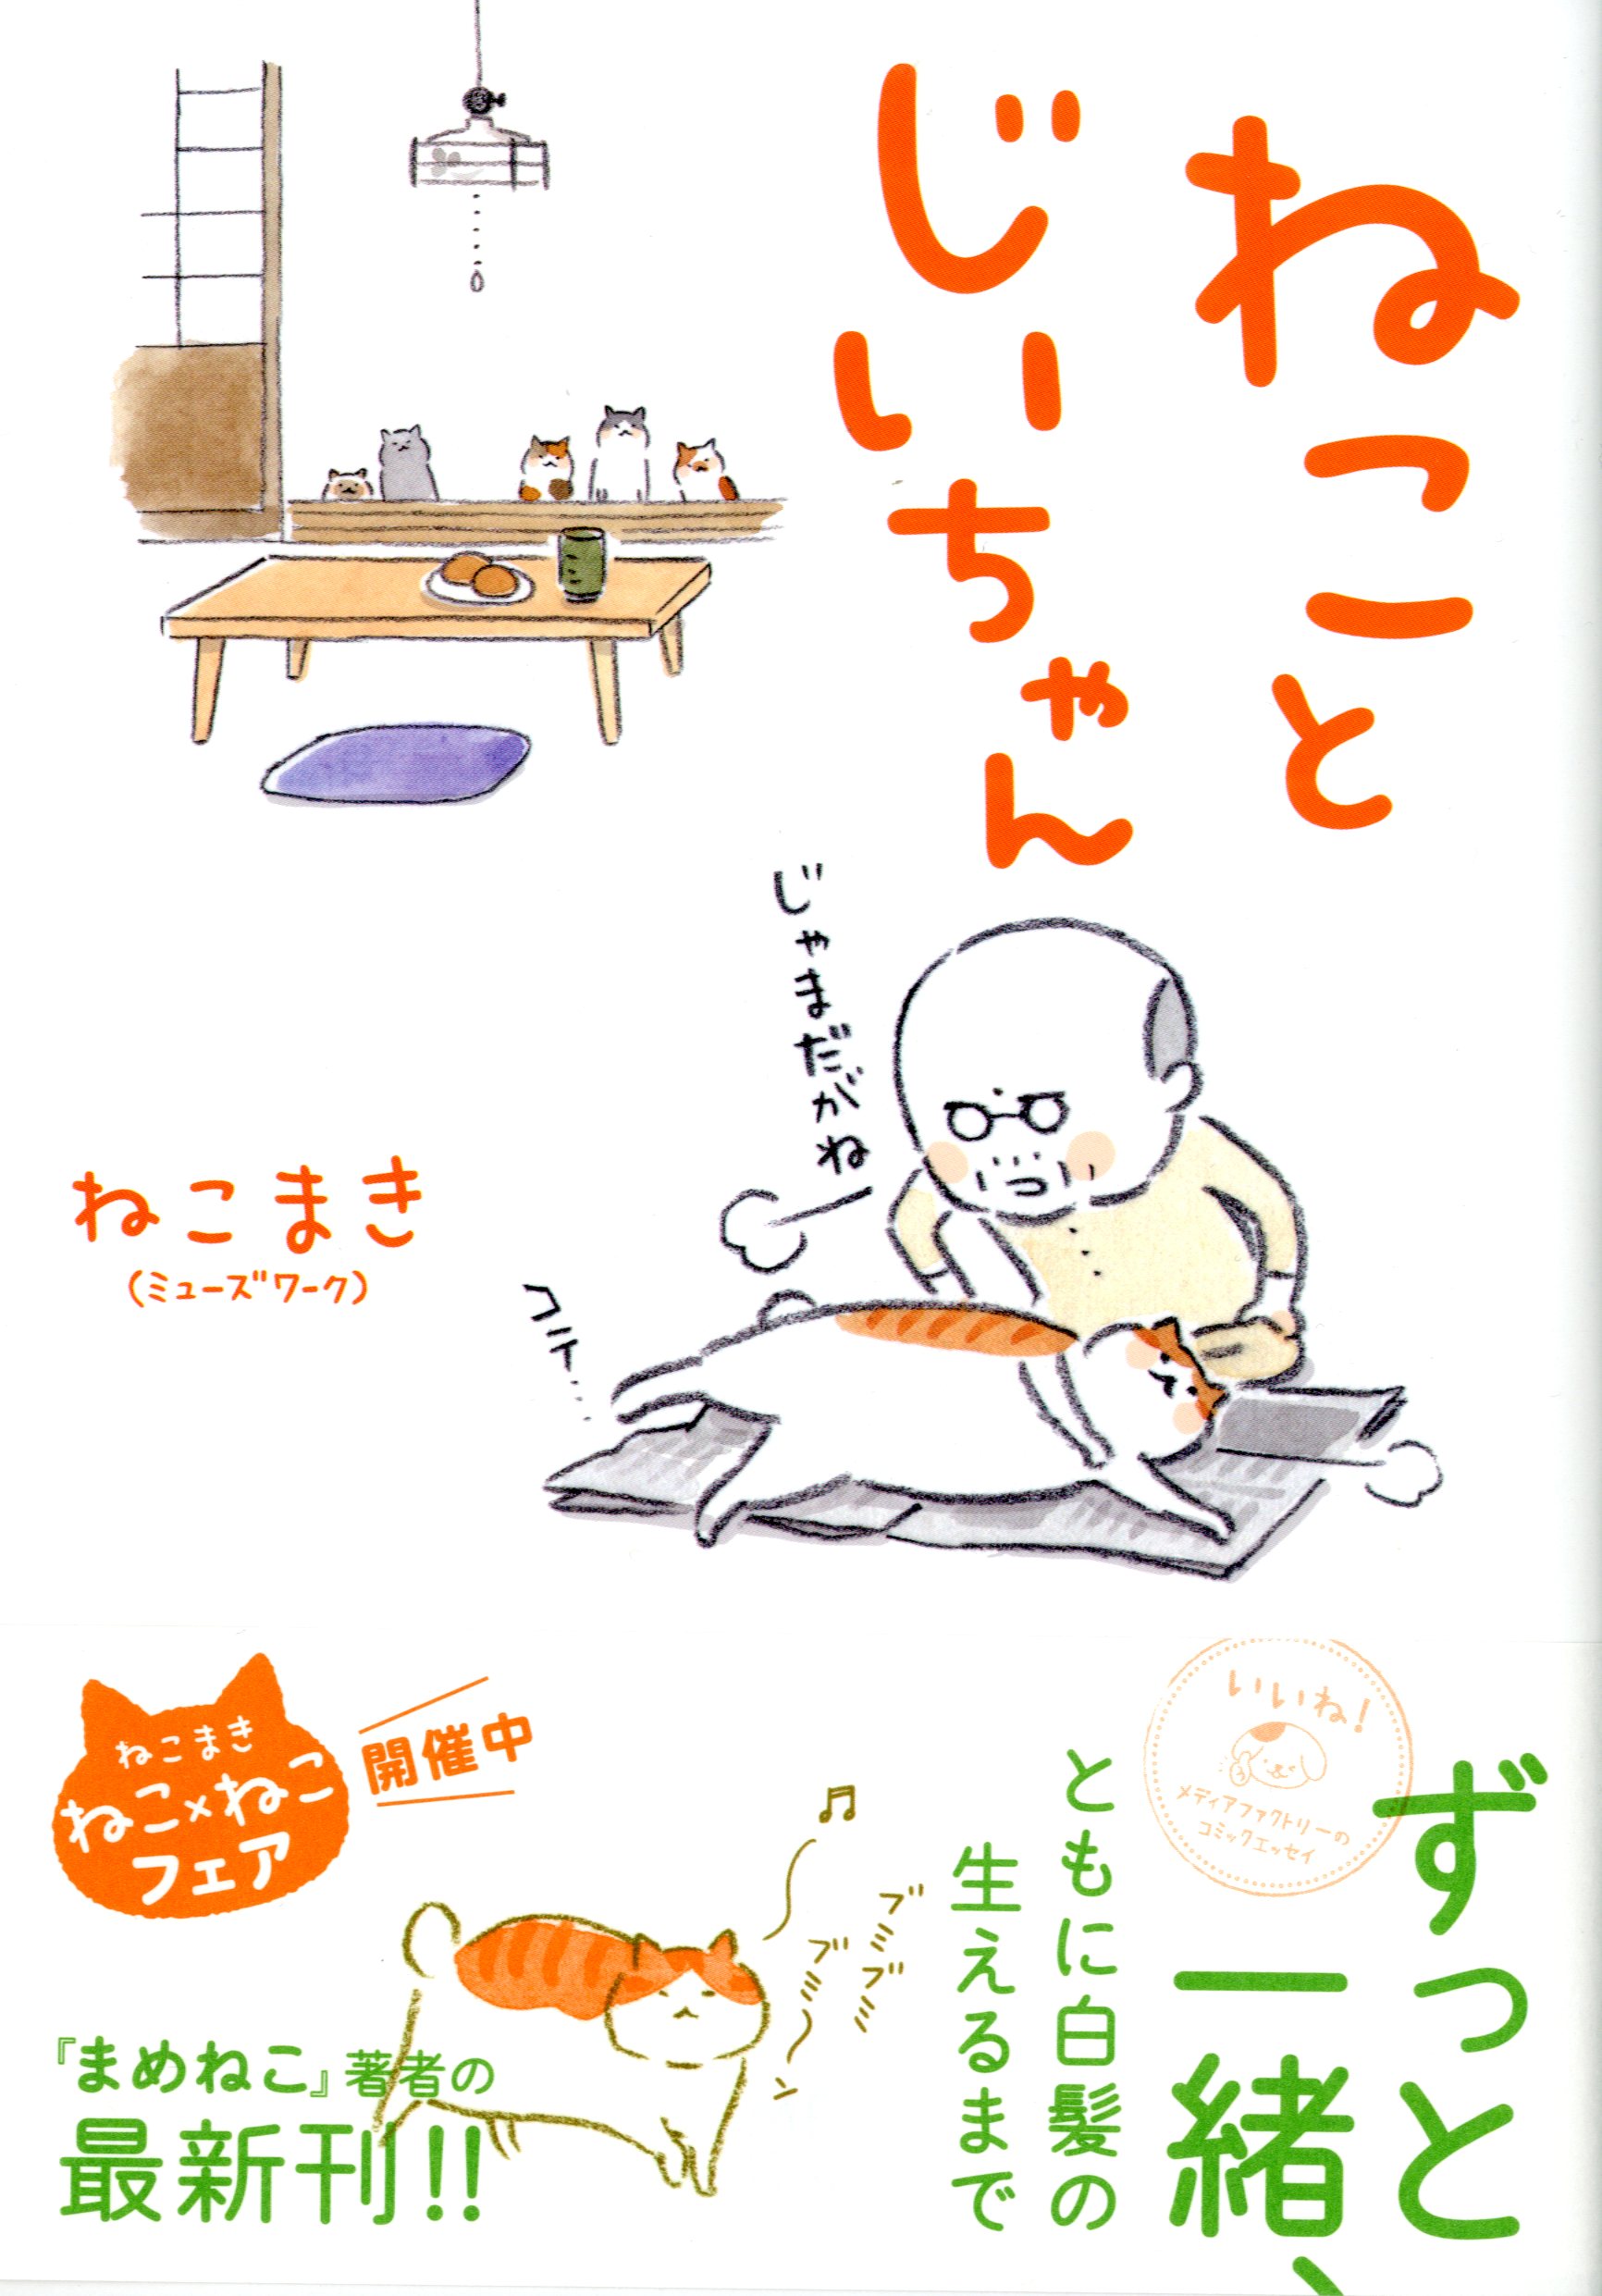 かわいいイラストが猫好きの心にズキューン 猫とじいちゃんの暮らしを描いたゆるねこ漫画 発売後即重版 株式会社kadokawaのプレスリリース